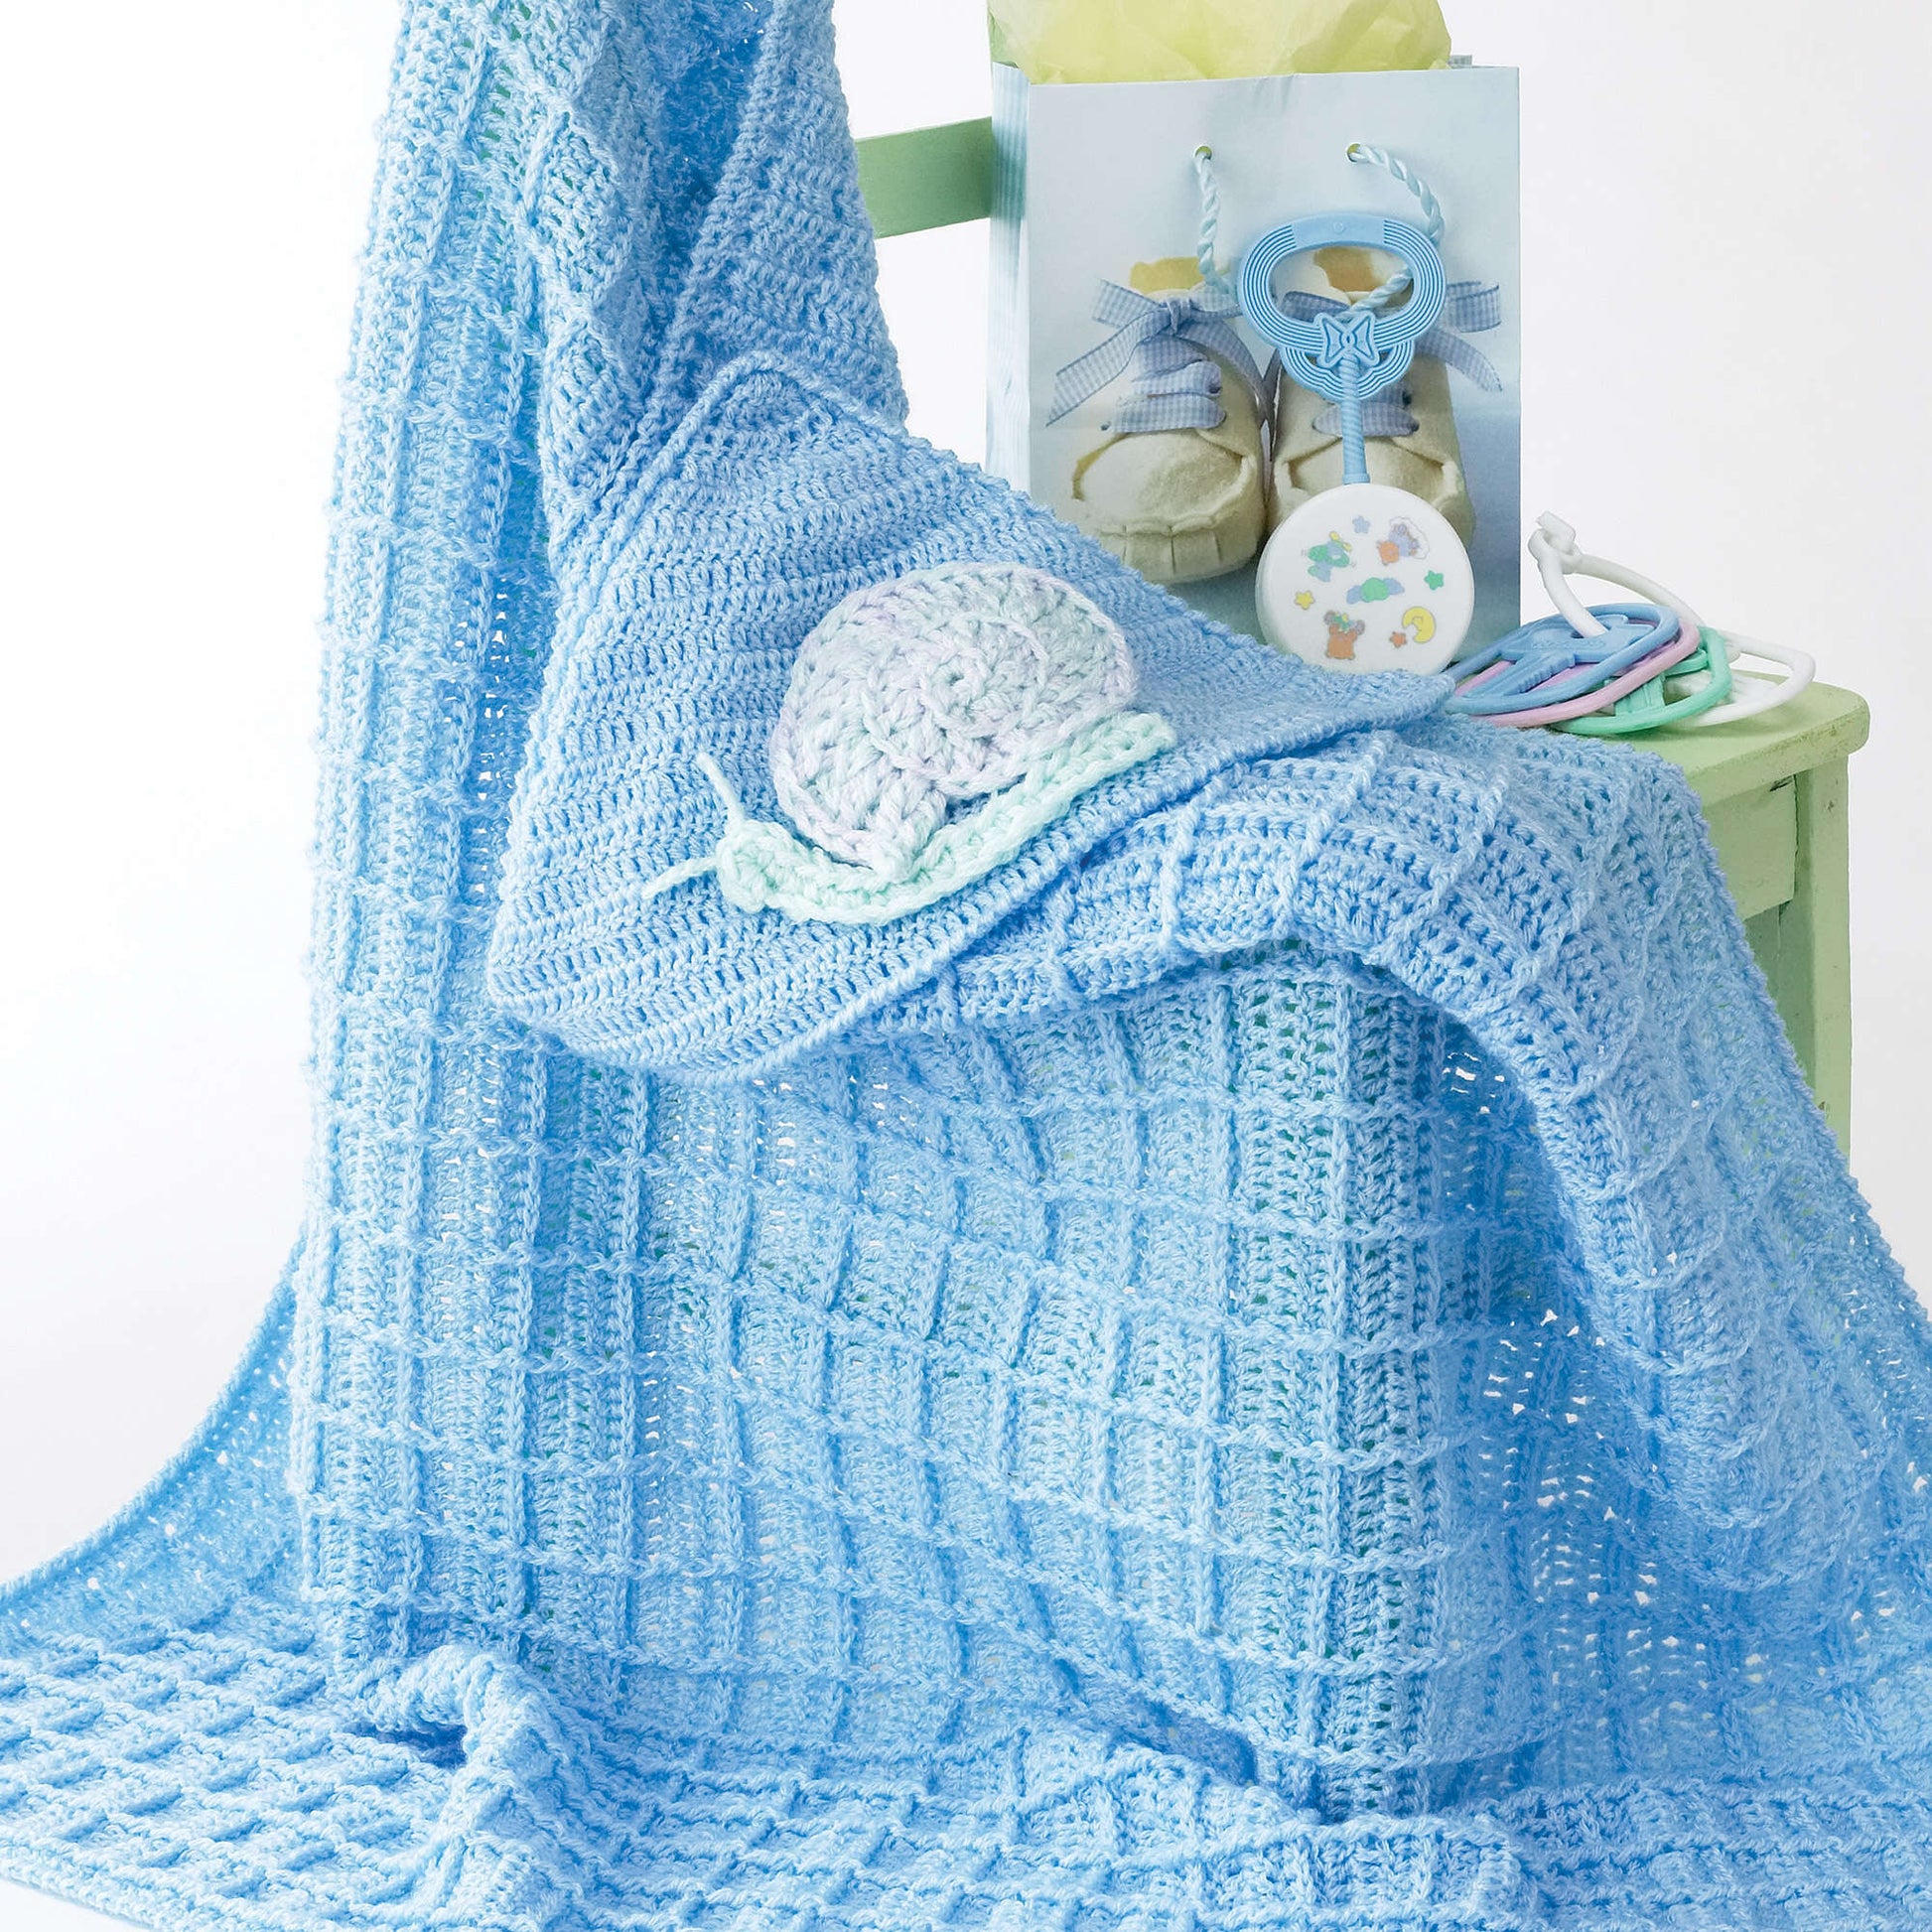 Free Bernat Snail Crochet Blanket Pattern